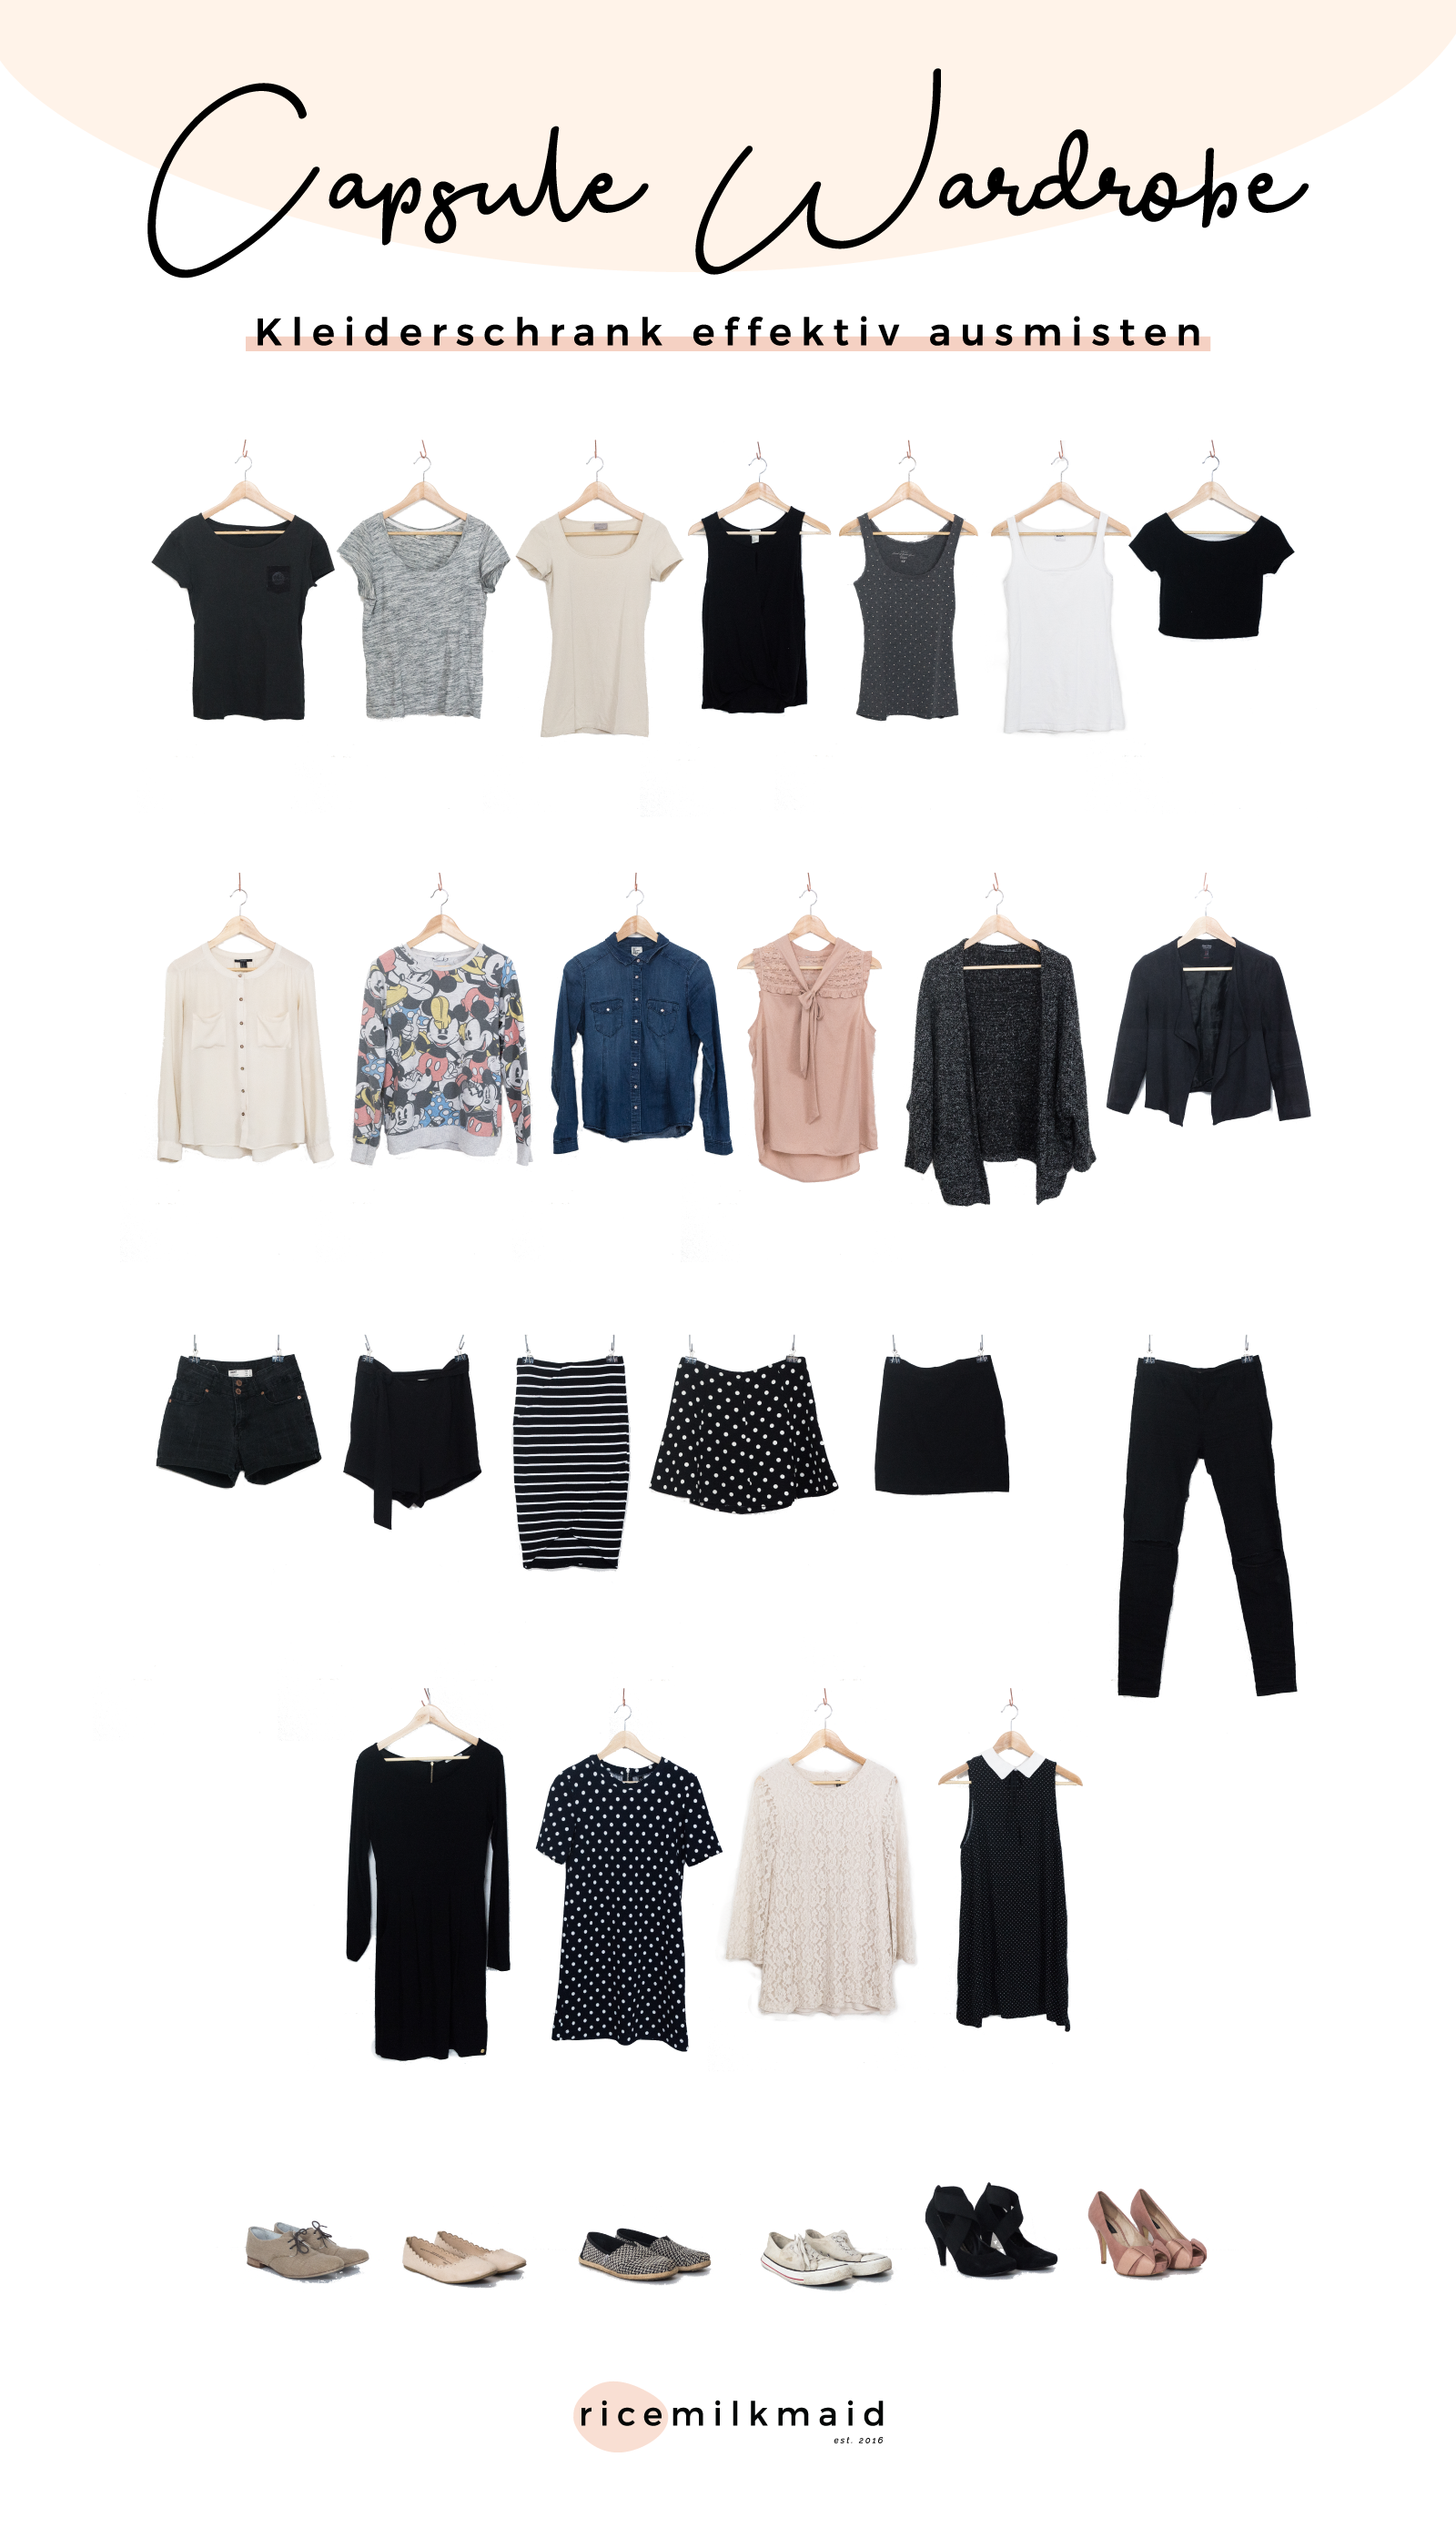 Wie erstellt man am besten eine minimalistische Garderobe? Lerne in diesem Beitrag das 5-Stufen-Prinzip kennen um deinen Kleiderschrank richtig und effektiv auszumisten. Weniger Kleidung = Weniger Stress. Das glaubst du nicht? Lies dir den Beitrag durch oder speichere ihn jetzt für später. #minimalismus #capsulewardrobe